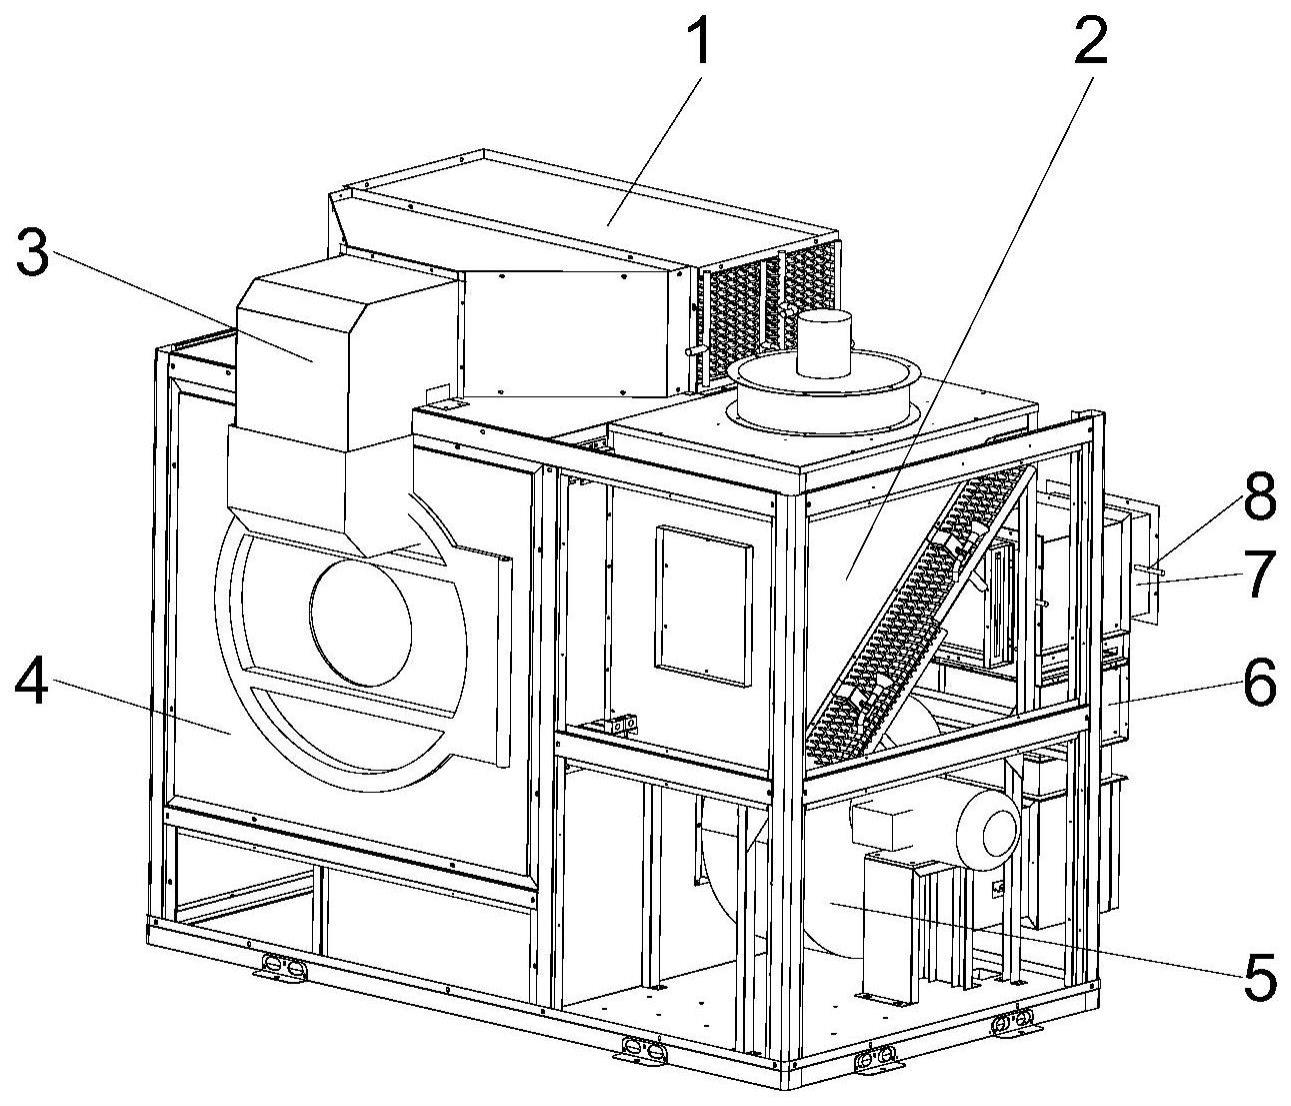 热泵干衣机风机控制方法、计算机设备及热泵干衣机与流程